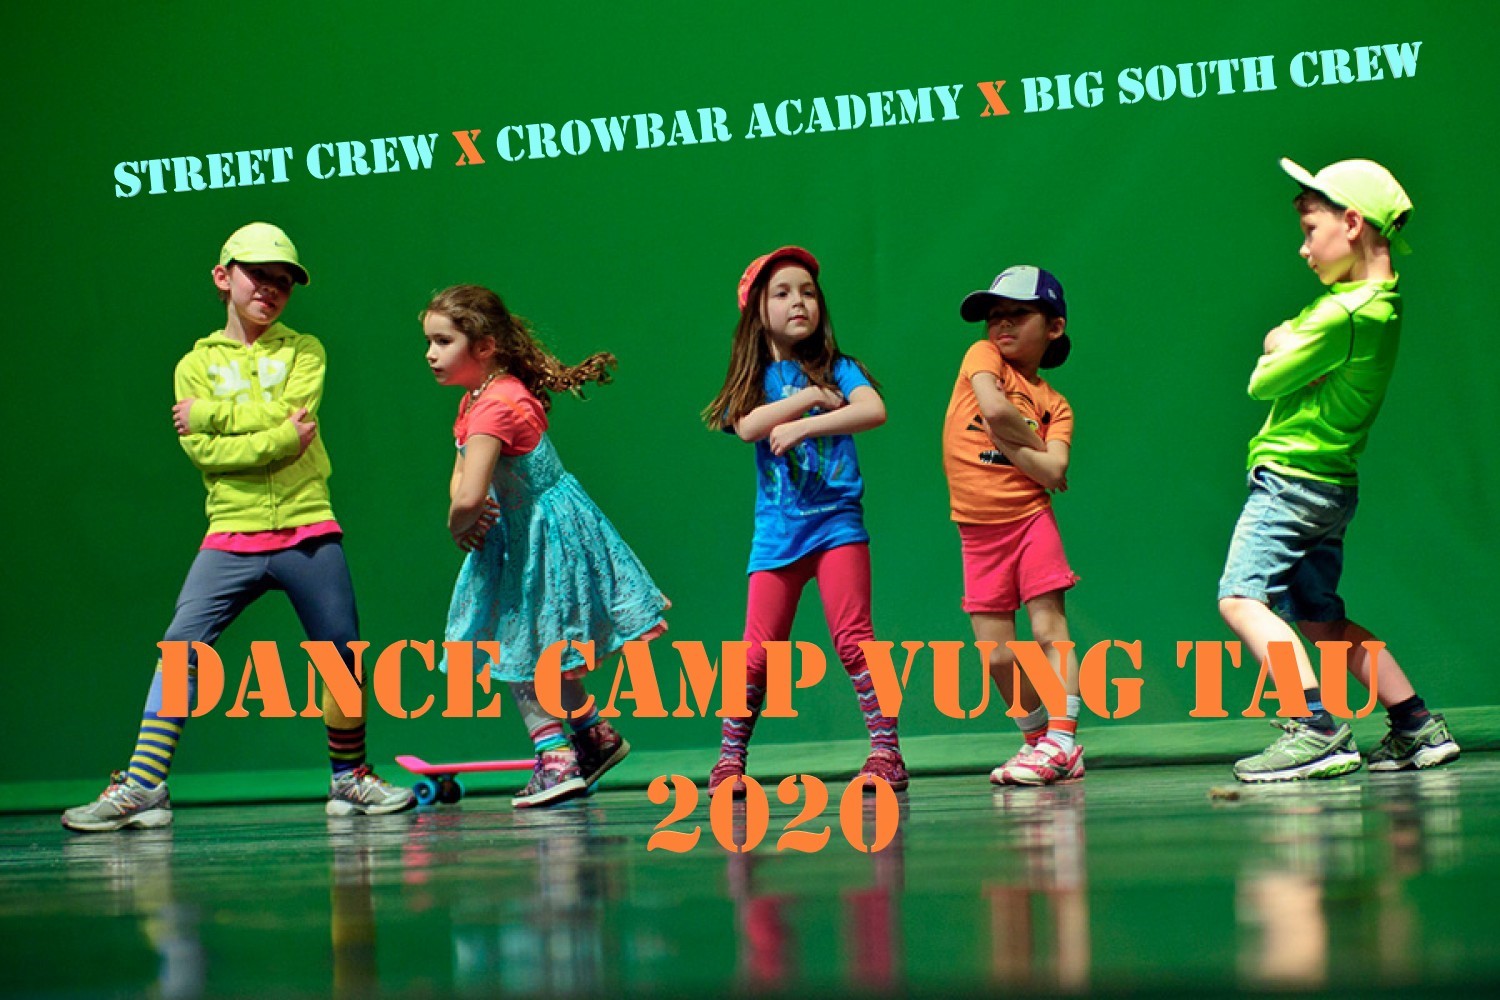 Street Crew x Crowbar Academy x Big South Crew ra mắt Dance Camp Vũng Tàu 2020 cho học sinh nhí